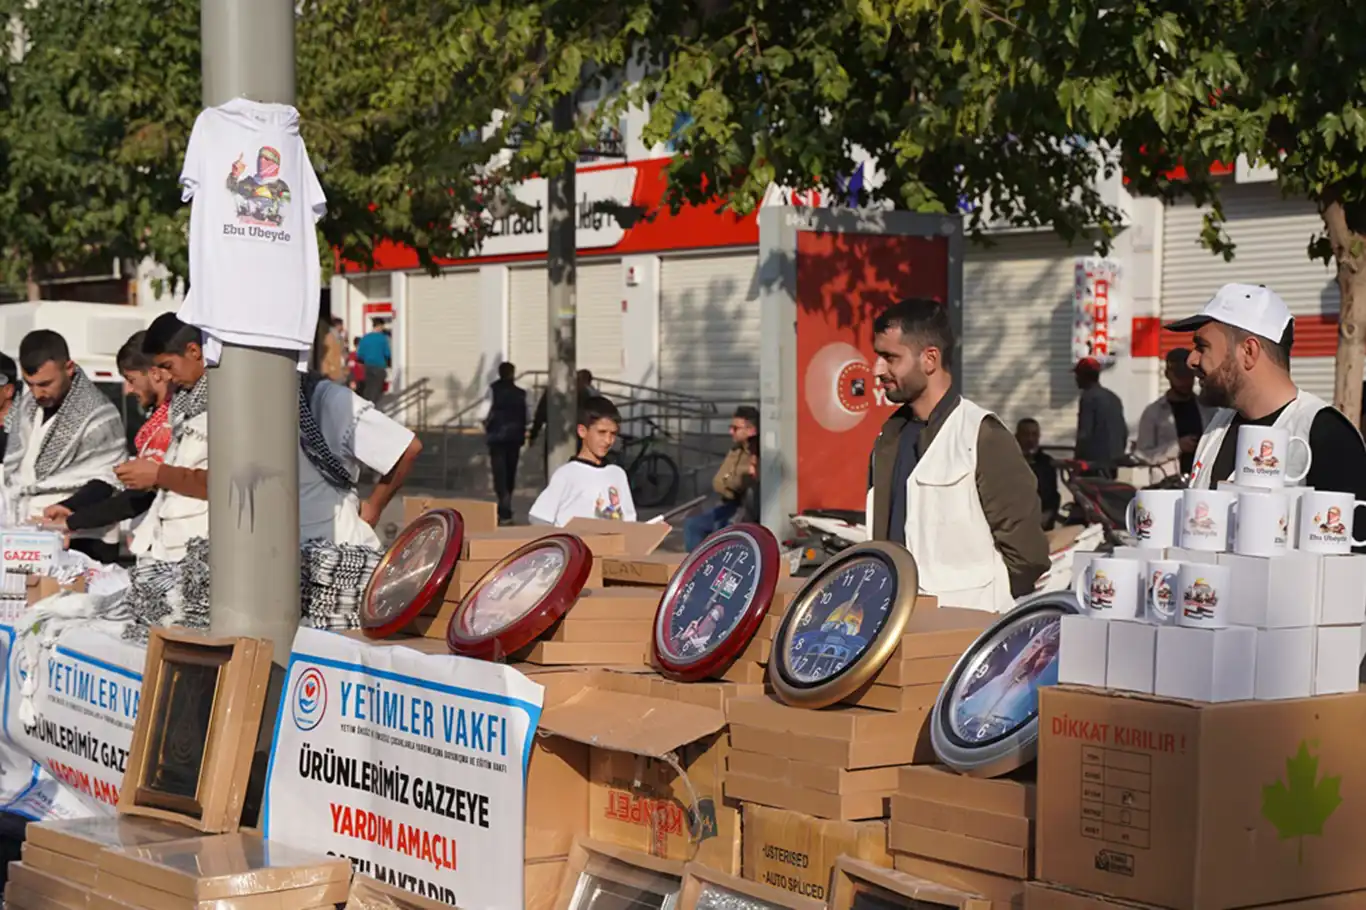 Yetimler Vakfı, Ebu Ubeyde baskılı ürünlerin bütün gelirini Gazze'ye bağışladı